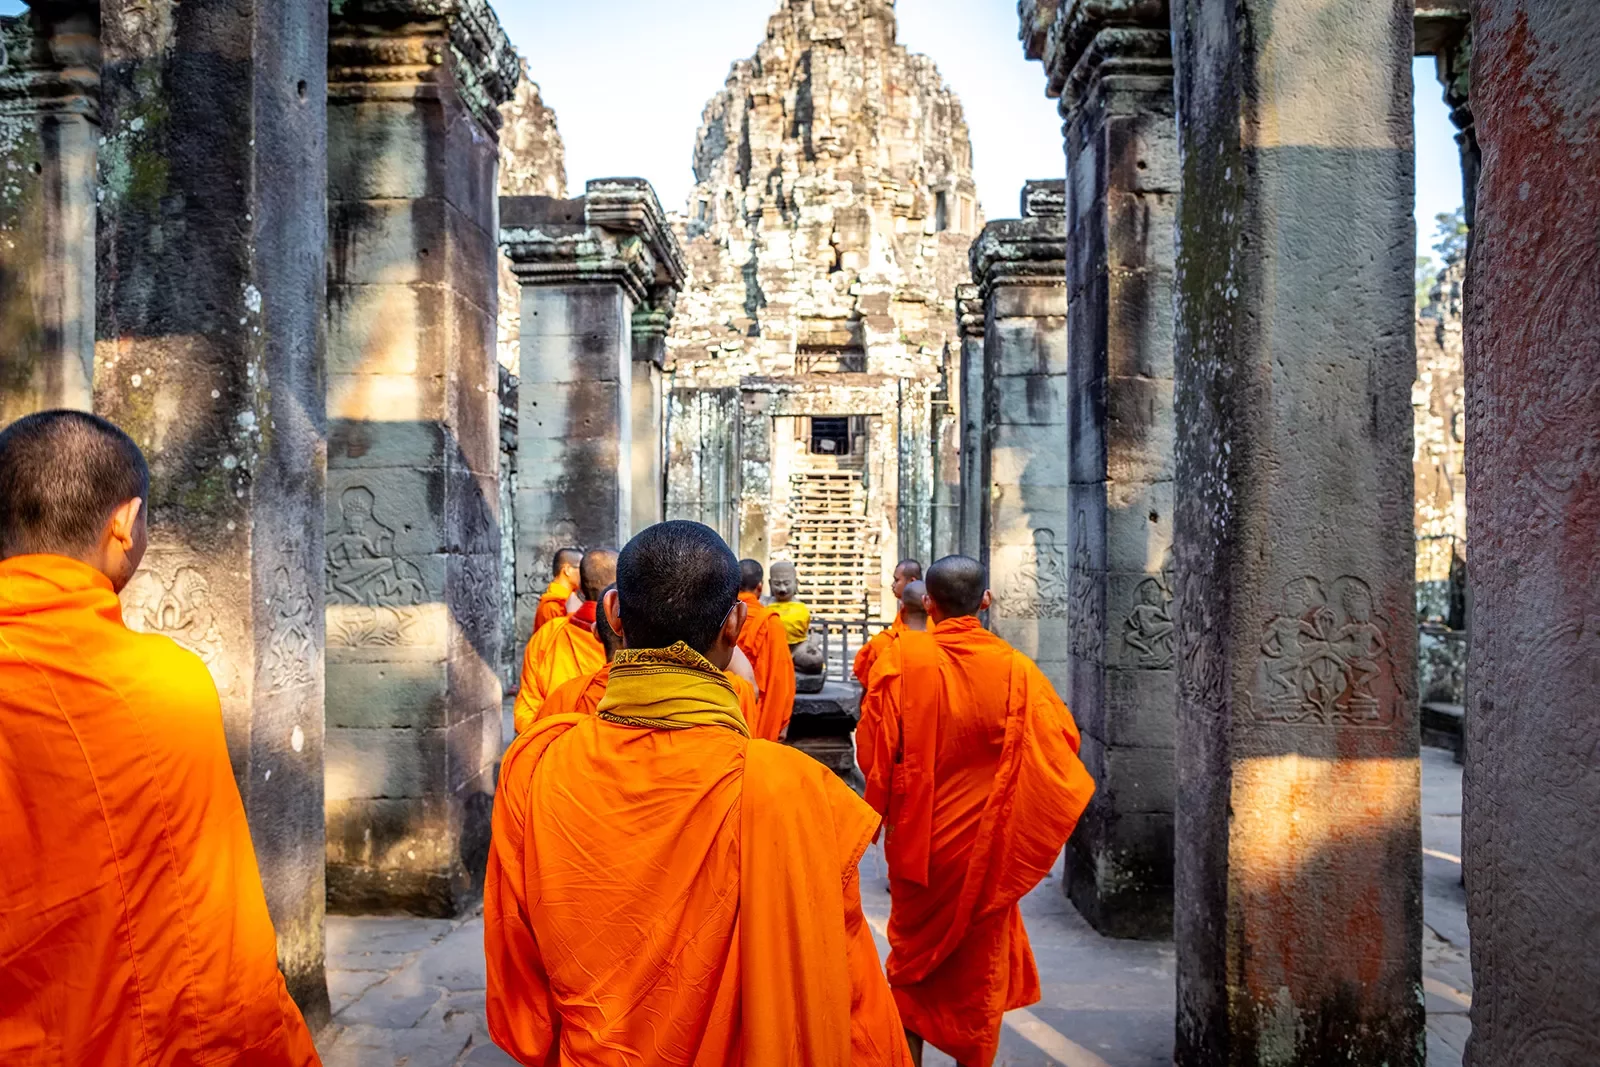 monks in orange